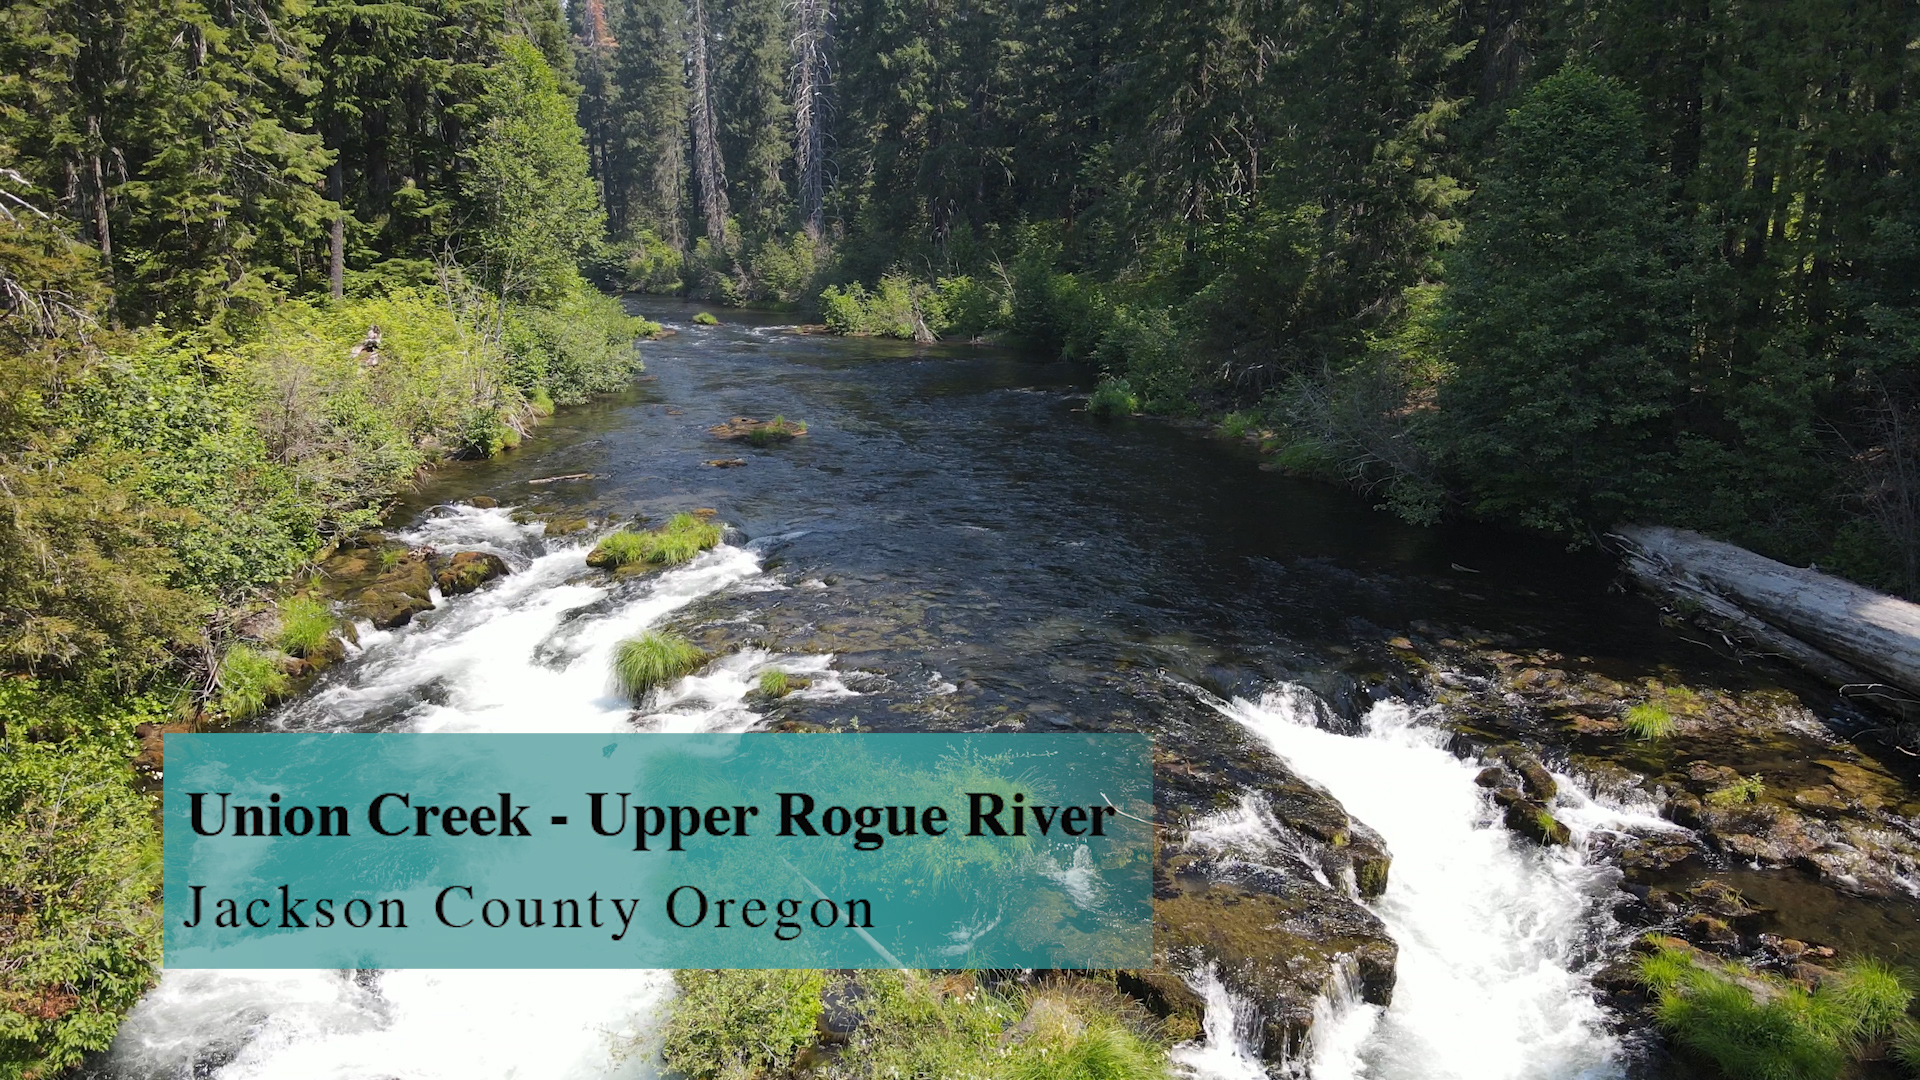 The Upper Rogue River